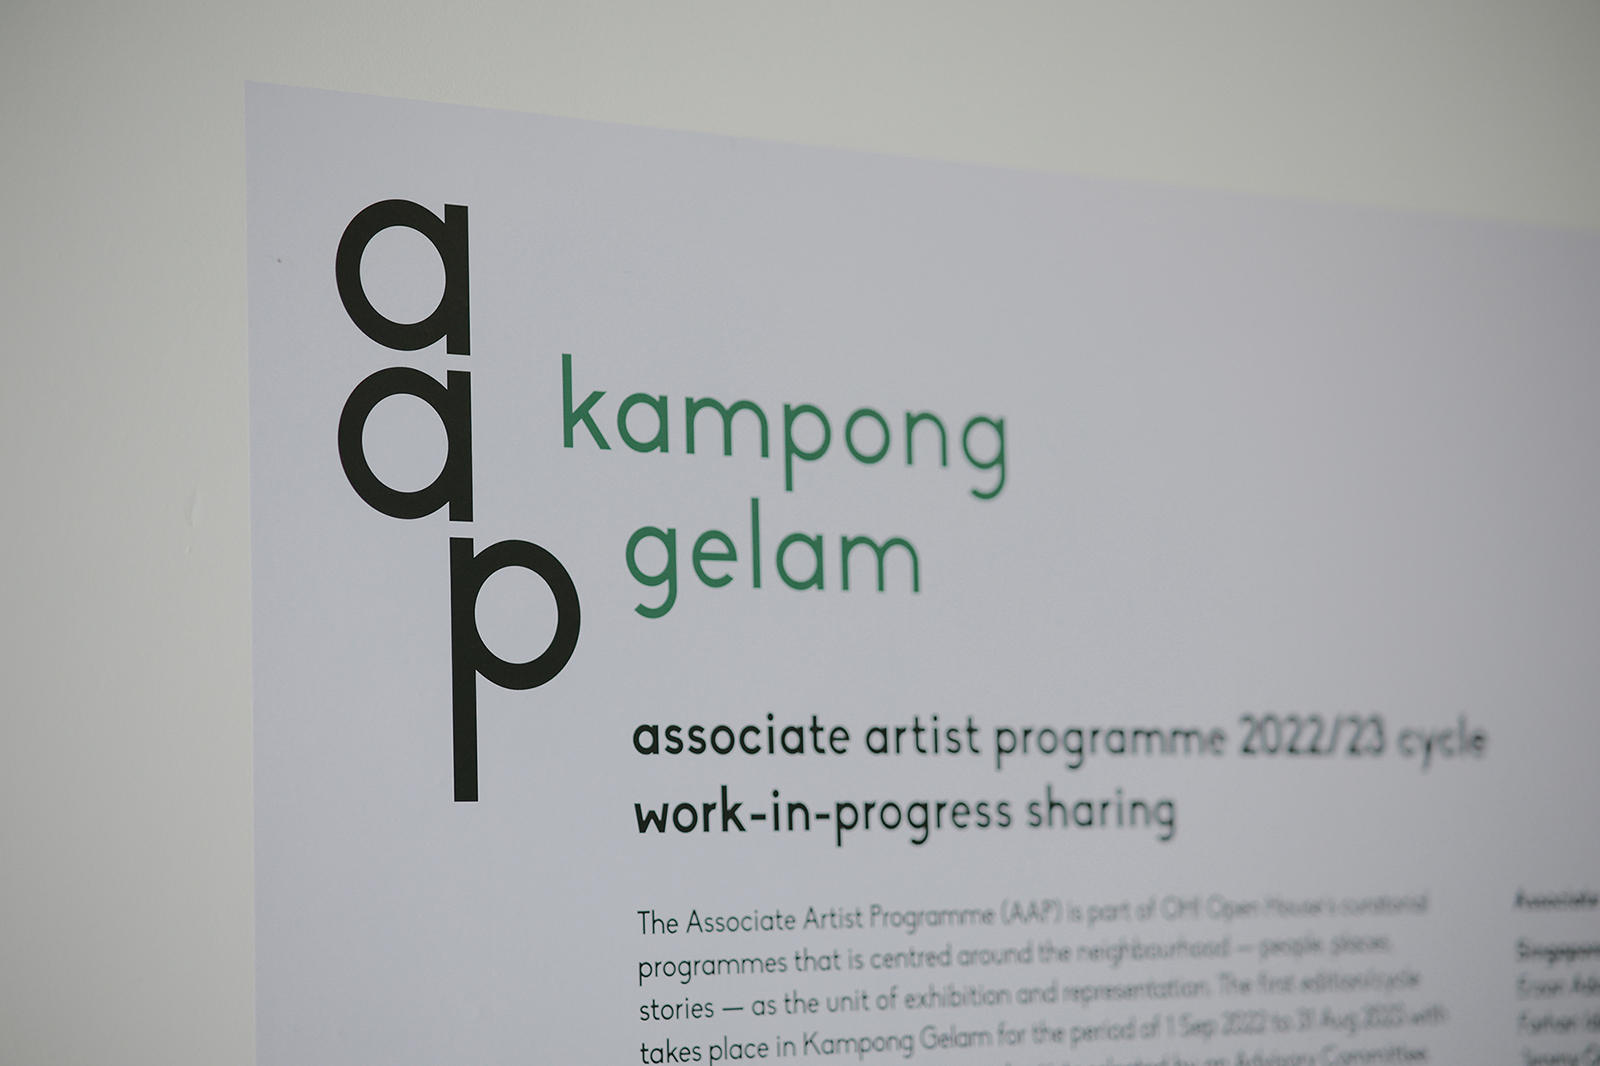 Associate Artist Programme (AAP)